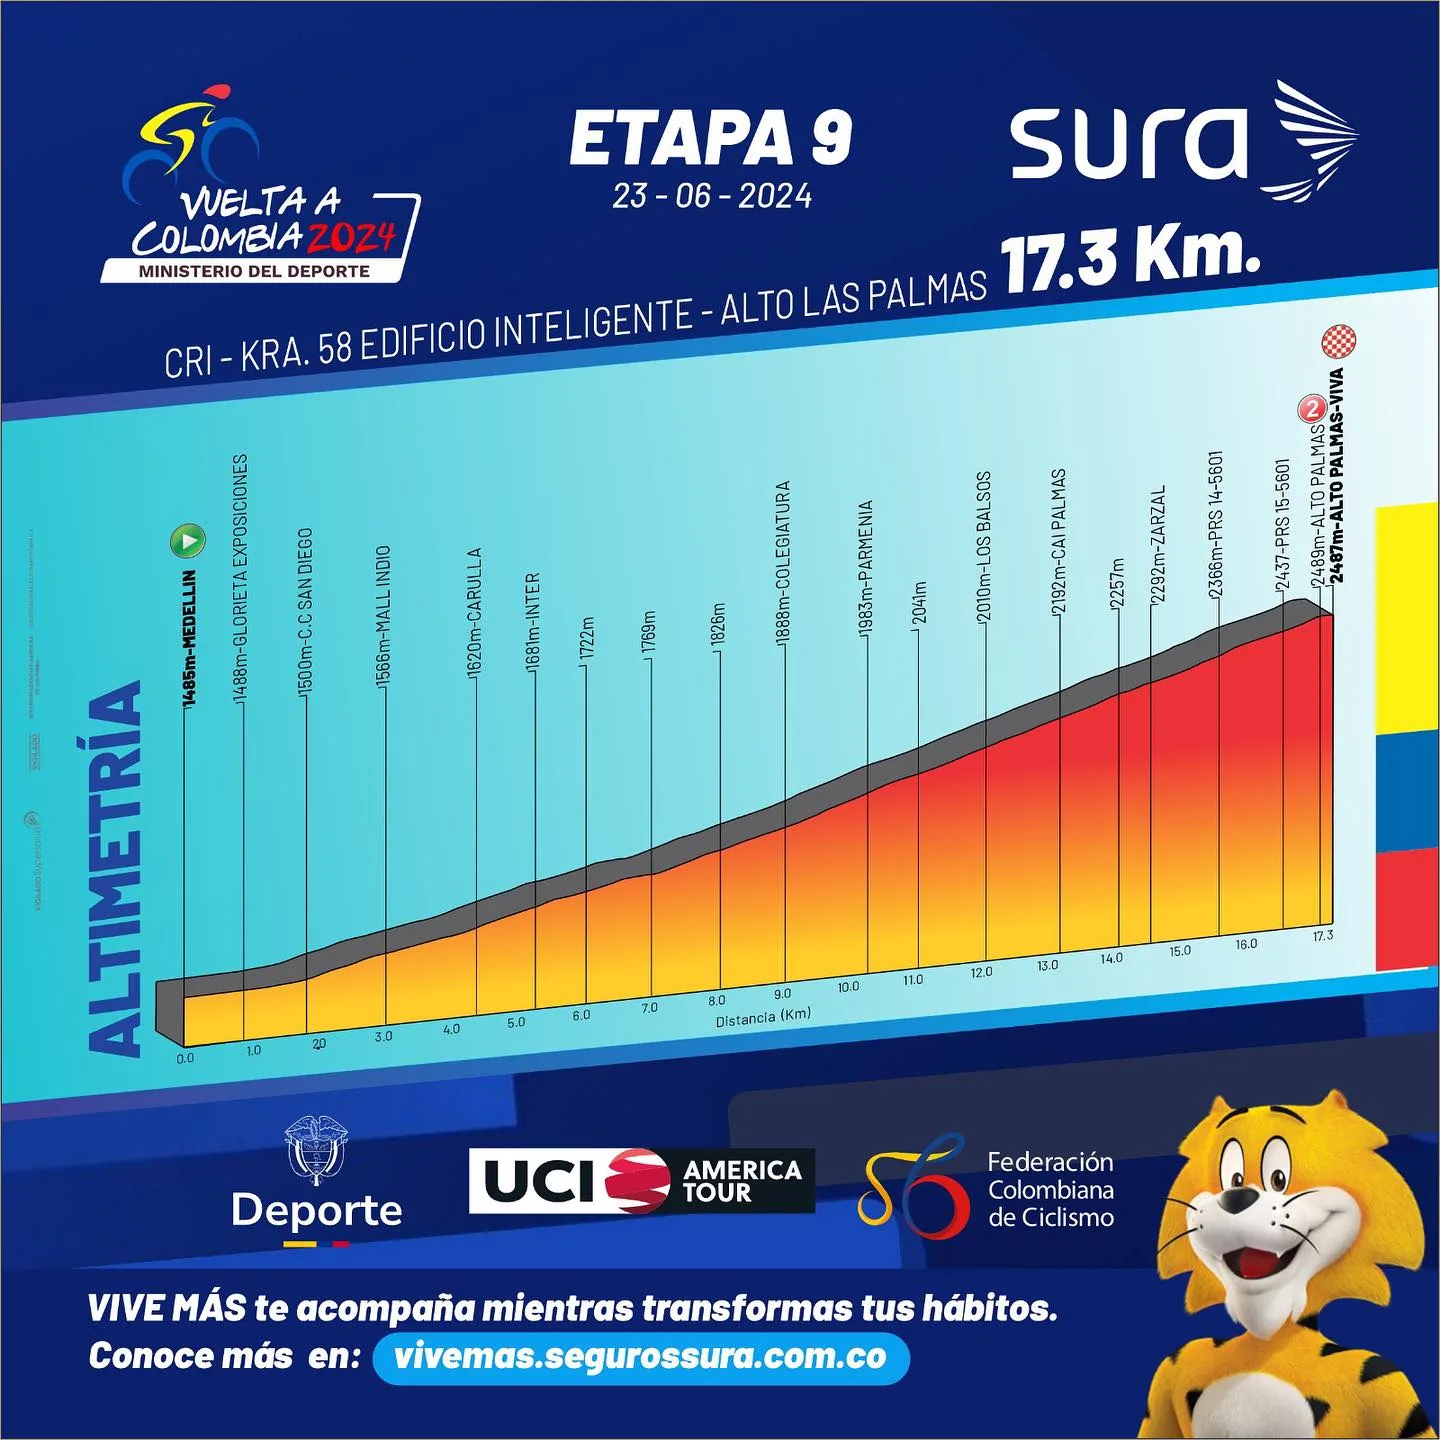 Etapa 9 Vuelta a Colombia 2024